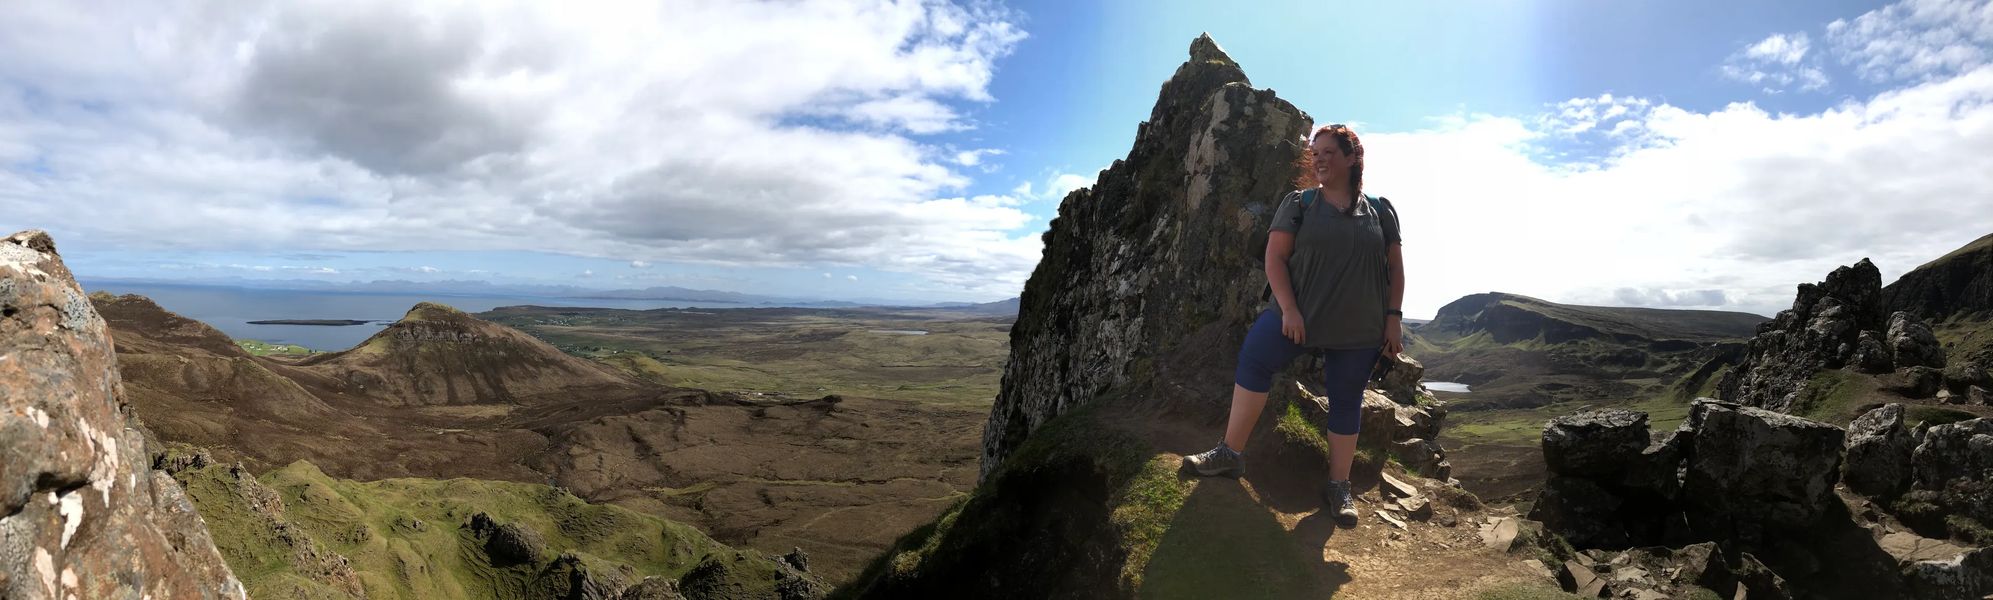 Top Things To Do In The Isle Of Skye - Culture Trekking - #IsleofSkye #scotland #TopthingstodointheisleofSkye